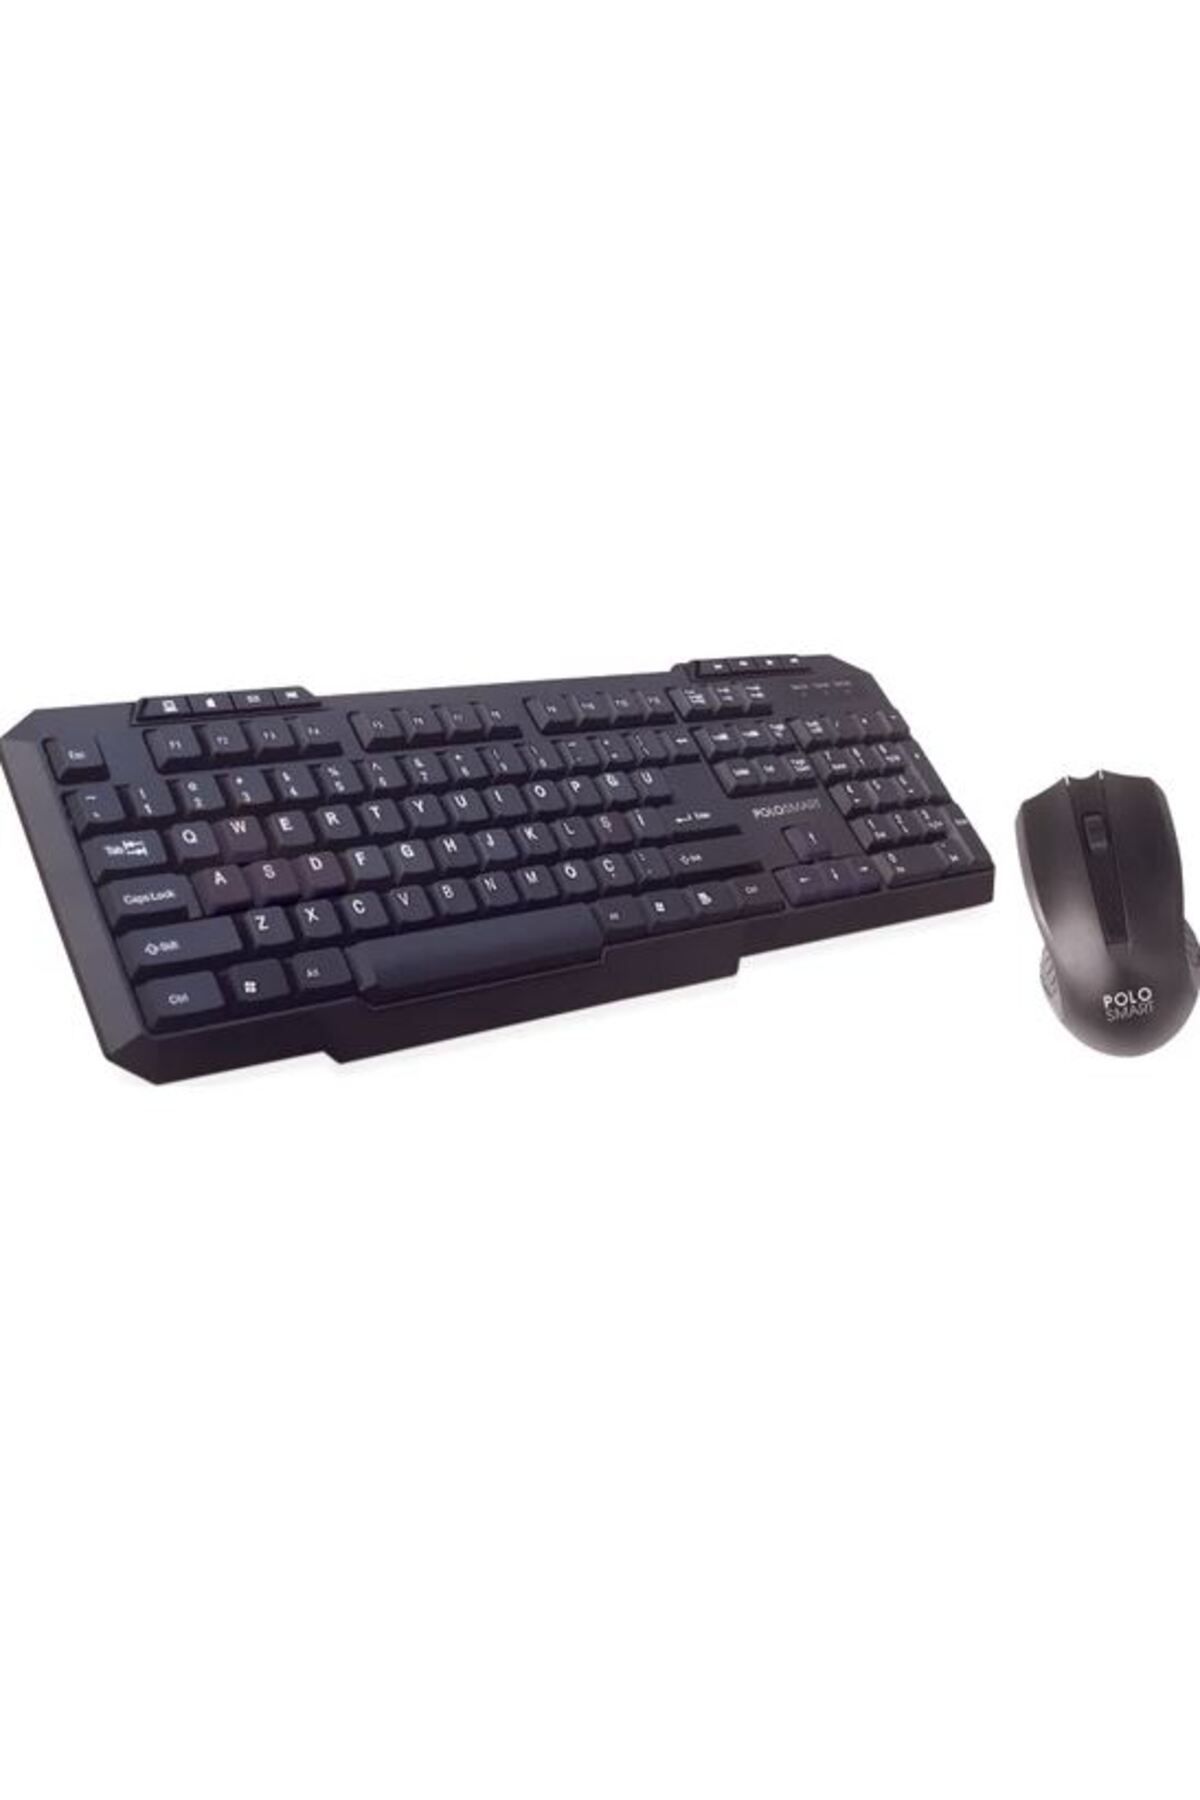 Polosmart PSK02 Kablosuz Klavye + Mouse Set